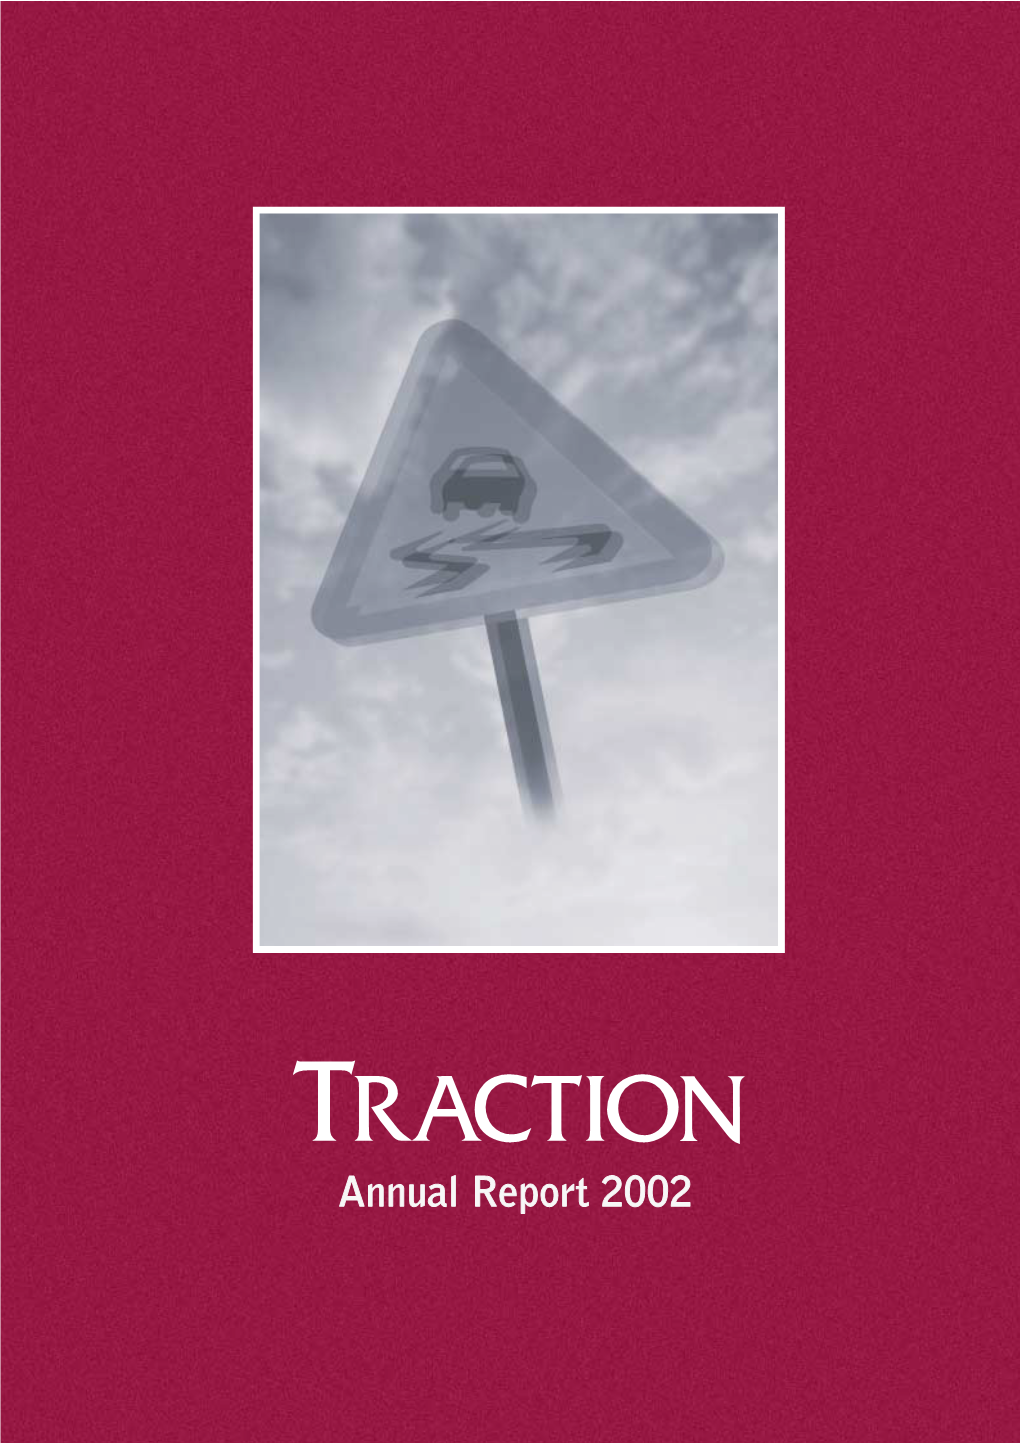 Annual Report 2002 Annual Report 2002